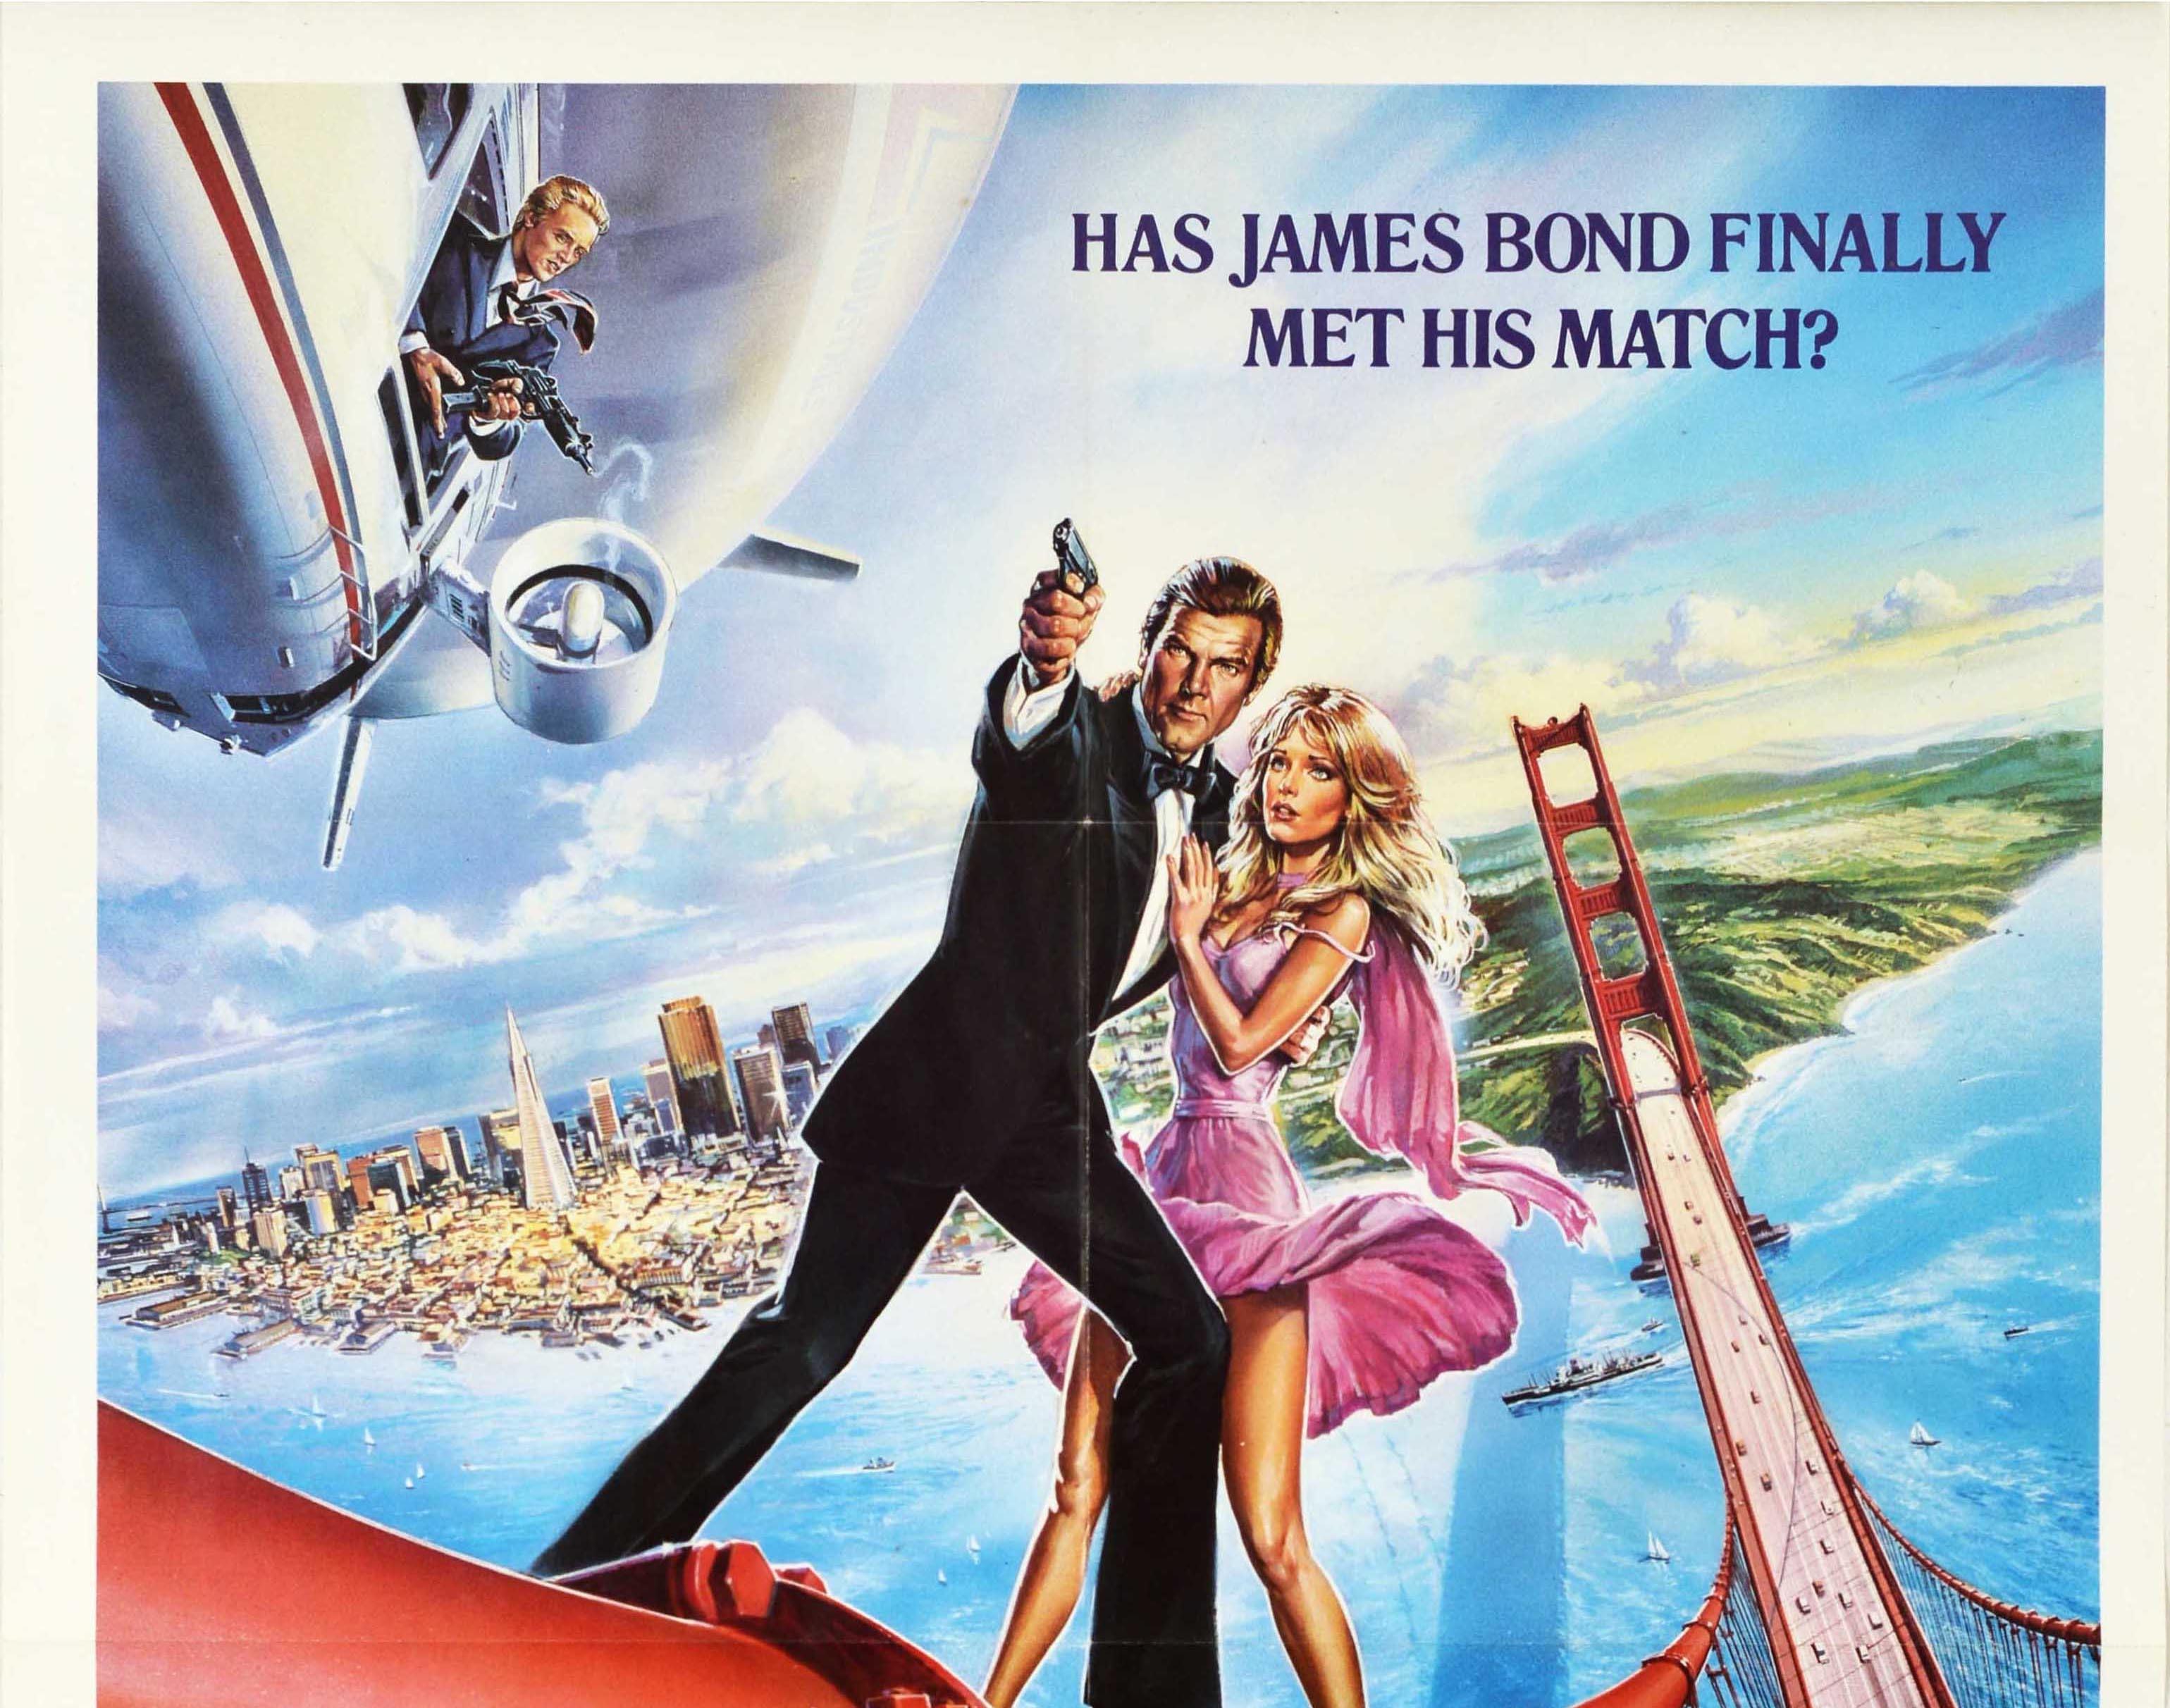 Originales altes Filmplakat für den James Bond 007 Film A View To A Kill - Hat James Bond endlich seinen Meister gefunden? - unter der Regie von John Glen mit Roger Moore in der Rolle des britischen Spions James Bond, Grace Jones als May Day,